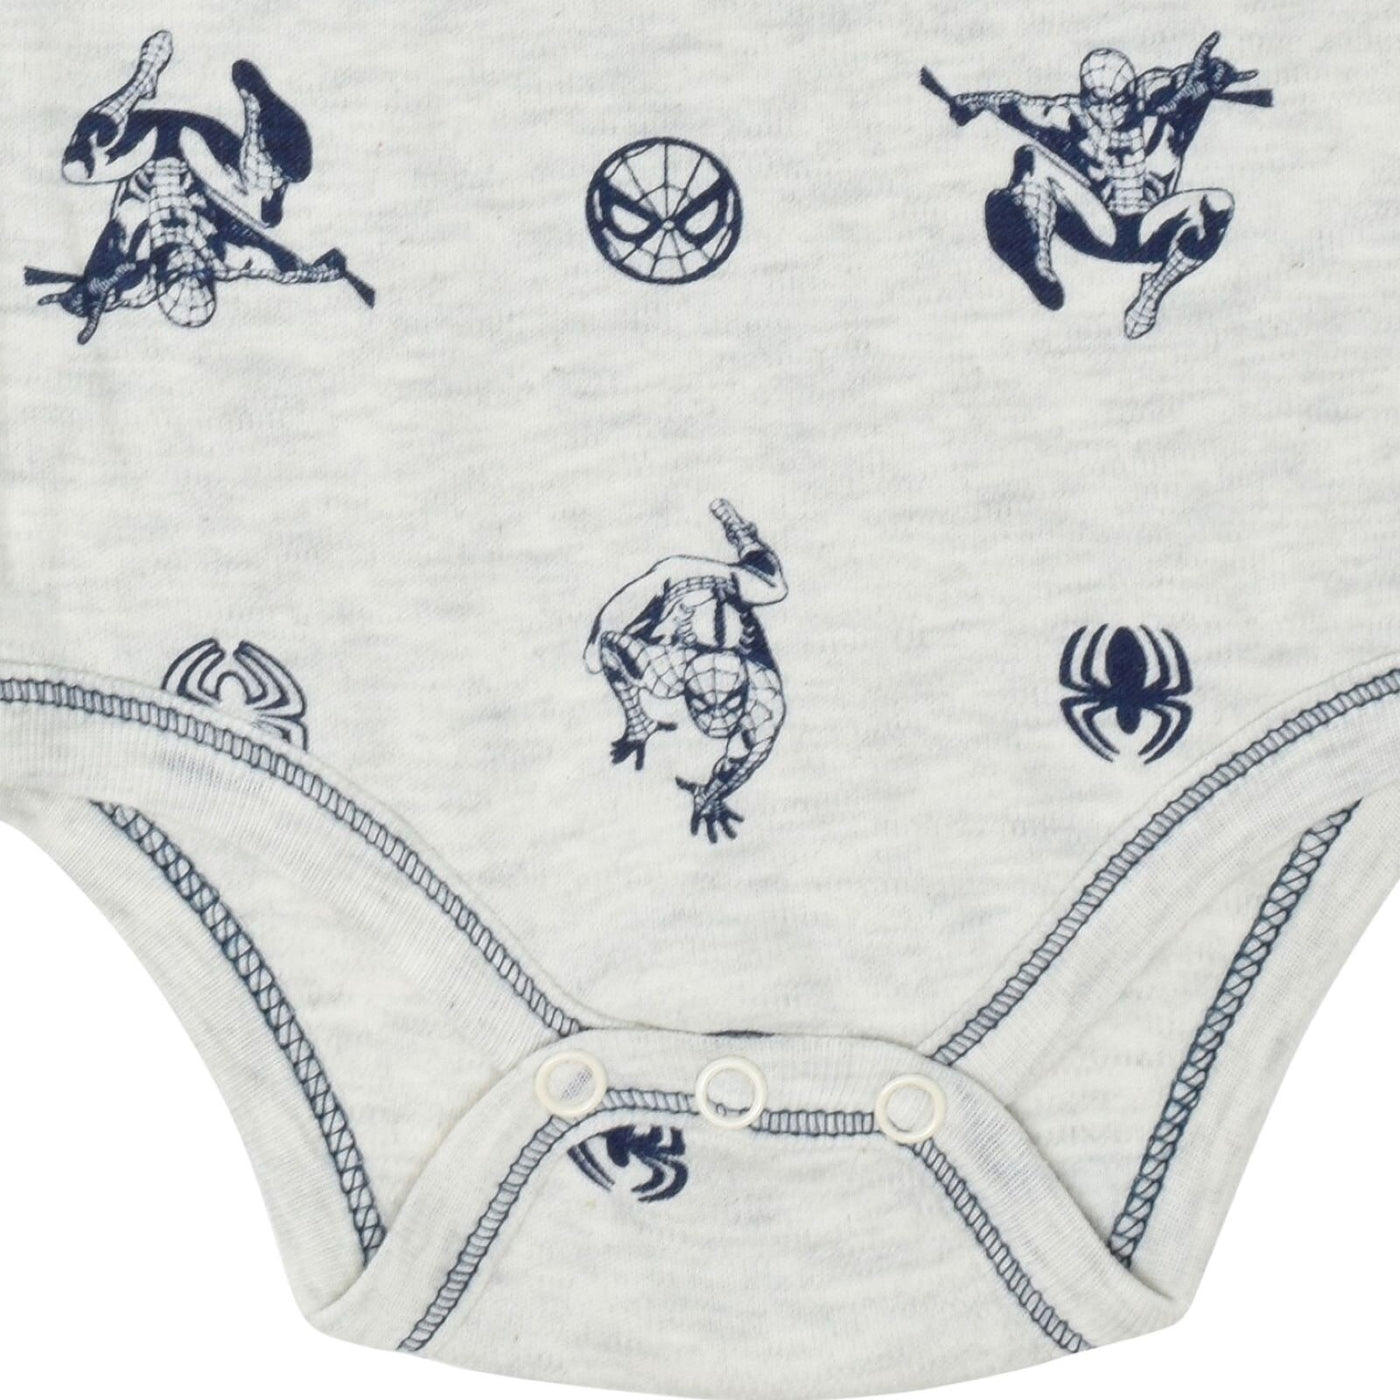 Marvel Avengers Spider-Man 5 Pack Bodysuits